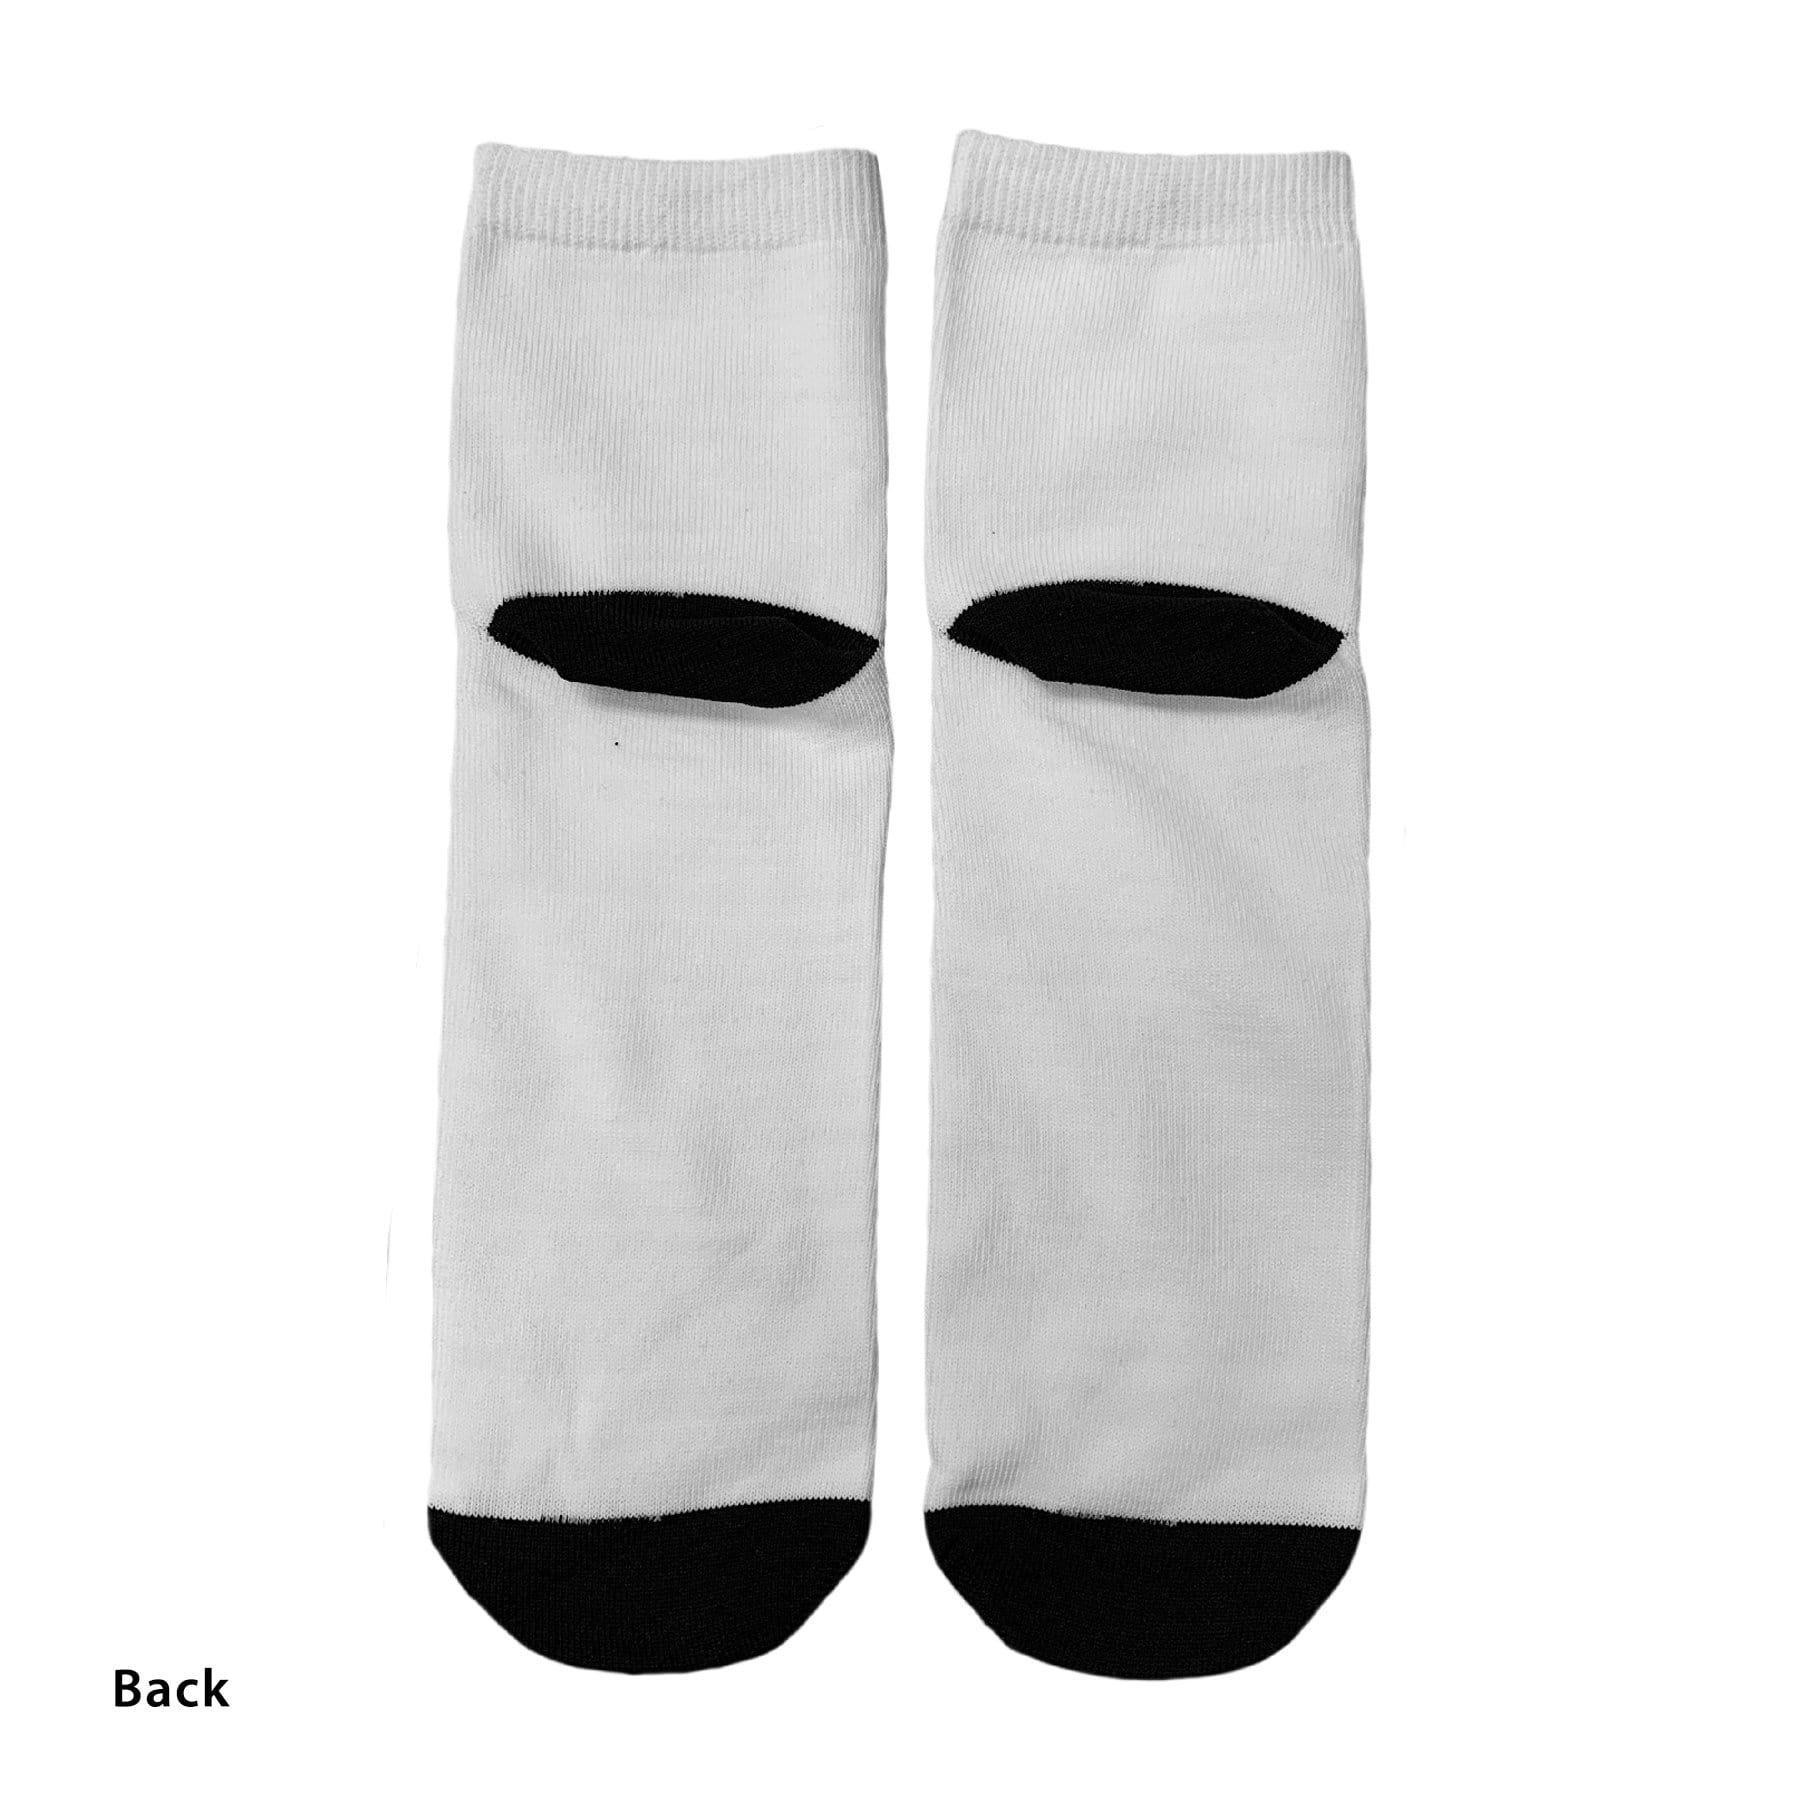 Blank Ankle Dress Socks (Quarter Ankle Length)